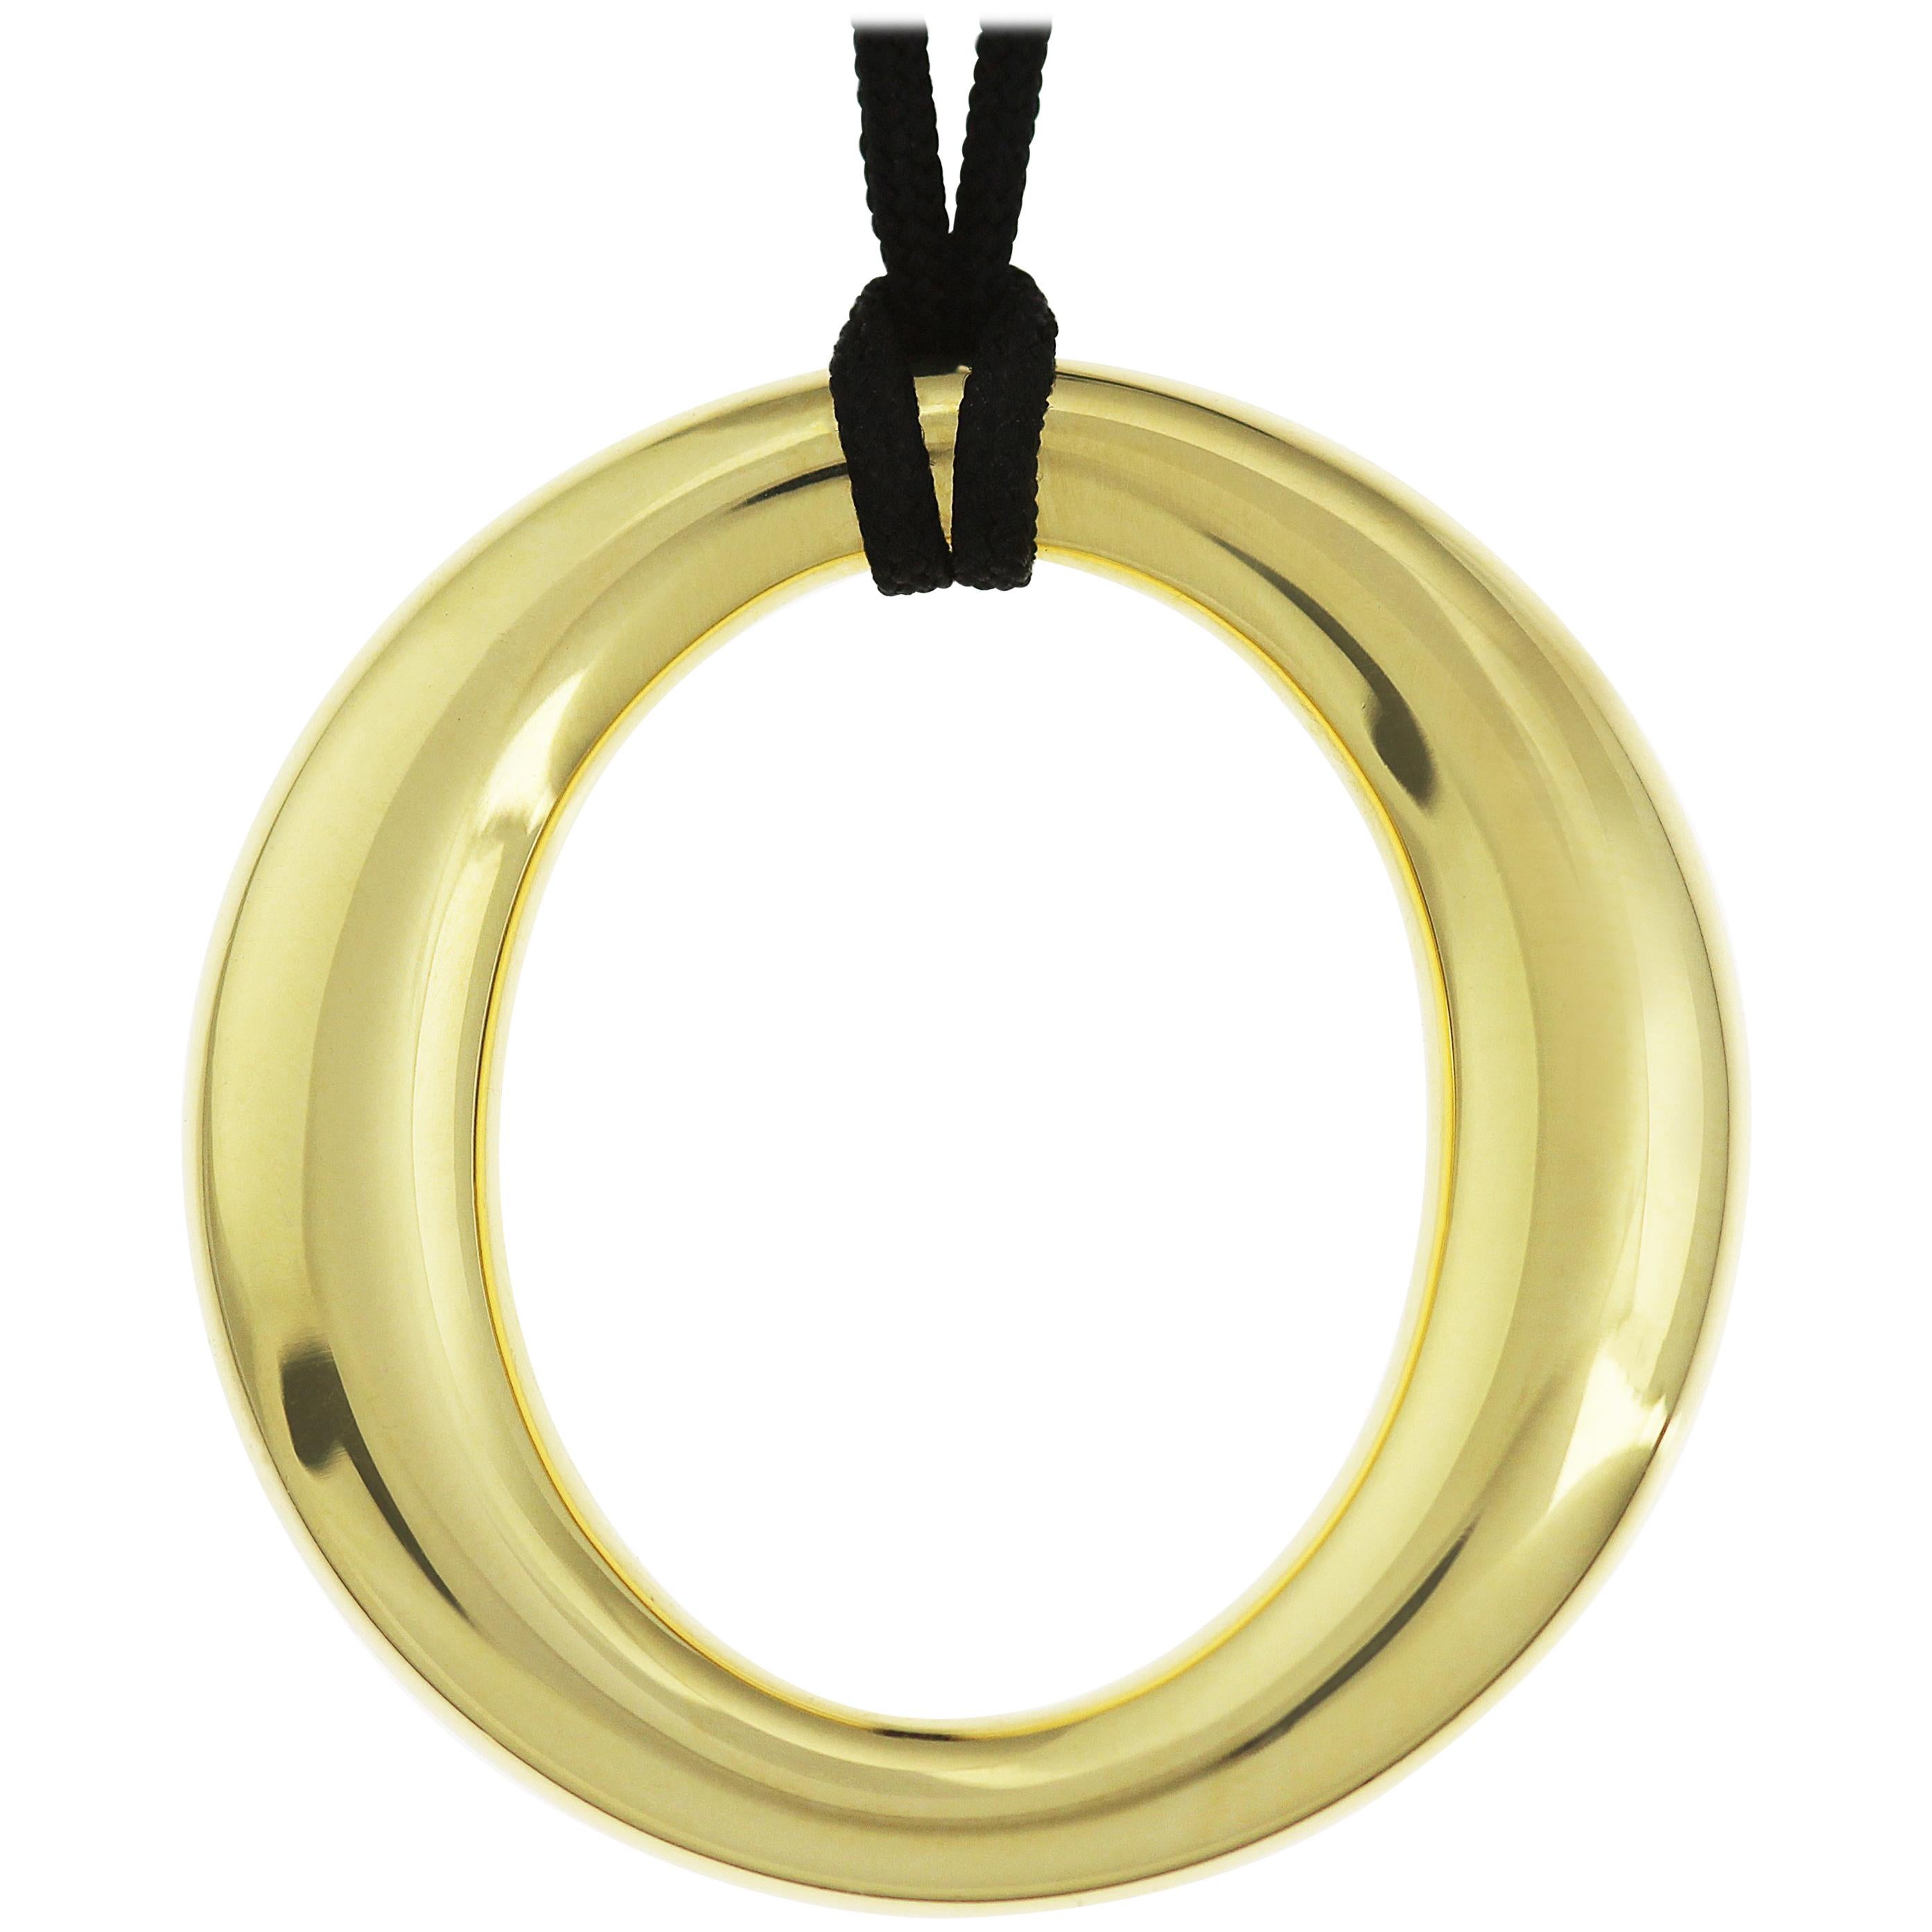 Tiffany Elsa Peretti Gold Oval Sevillana Pendant with Silk Cord